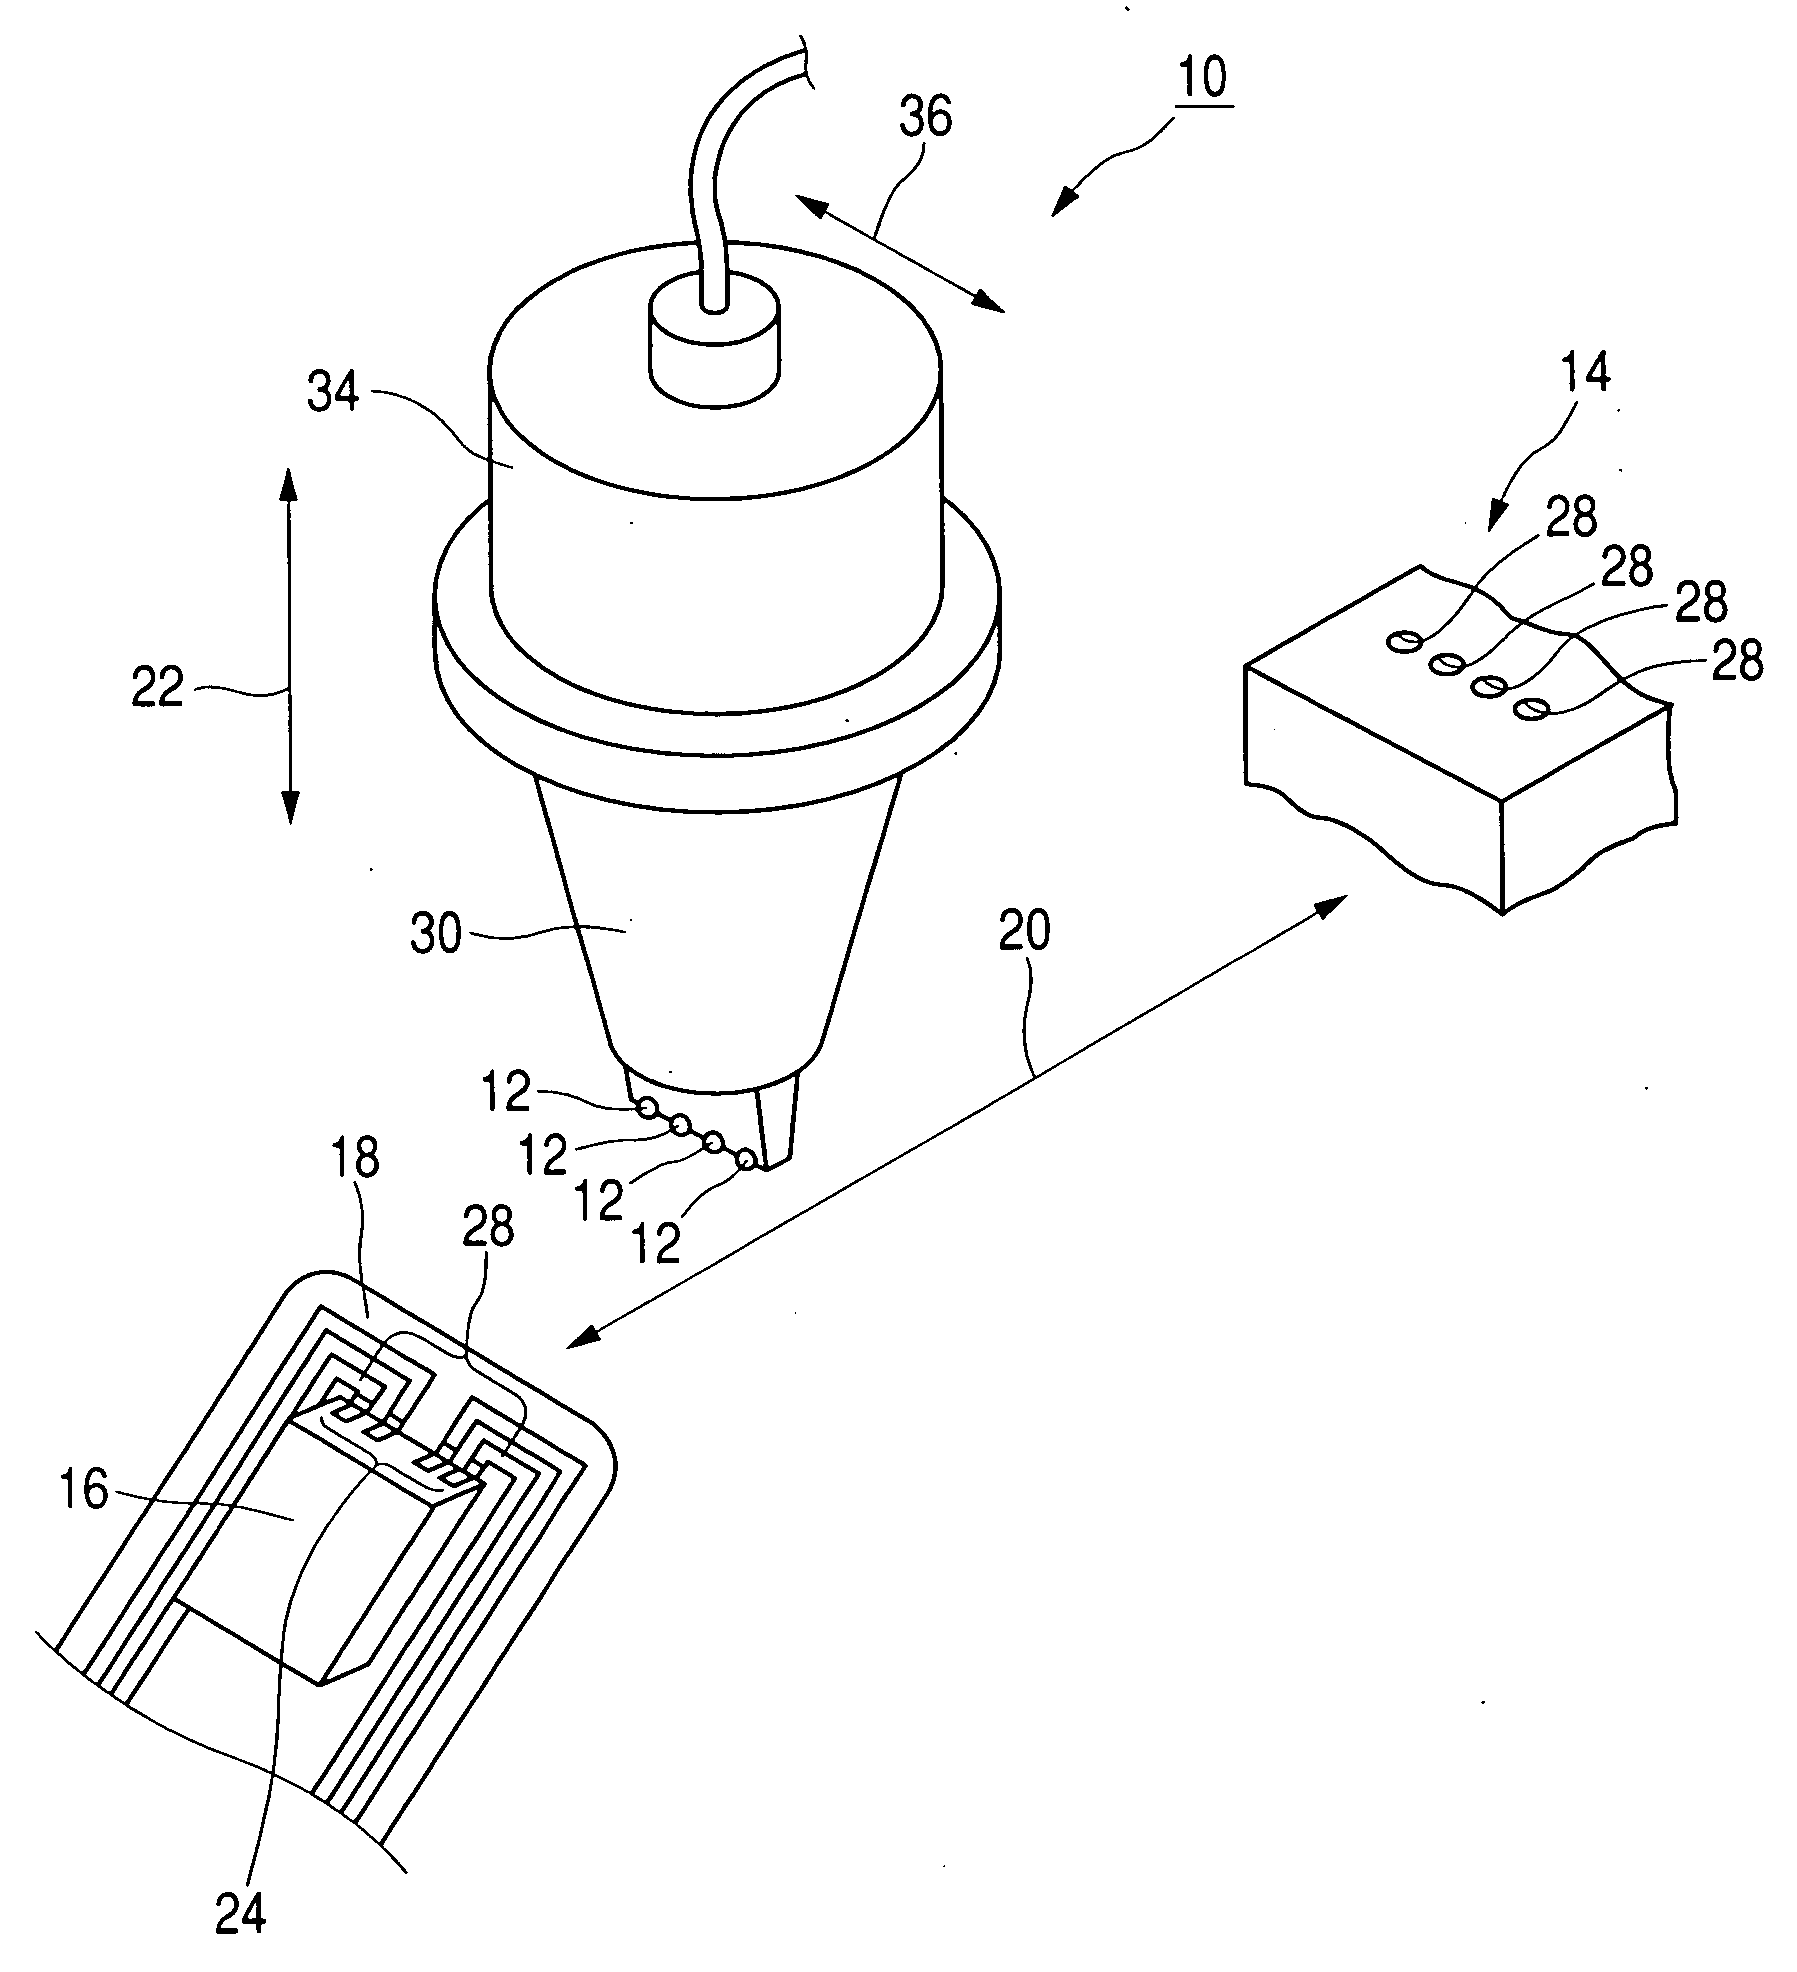 Solder ball bonding method and bonding device